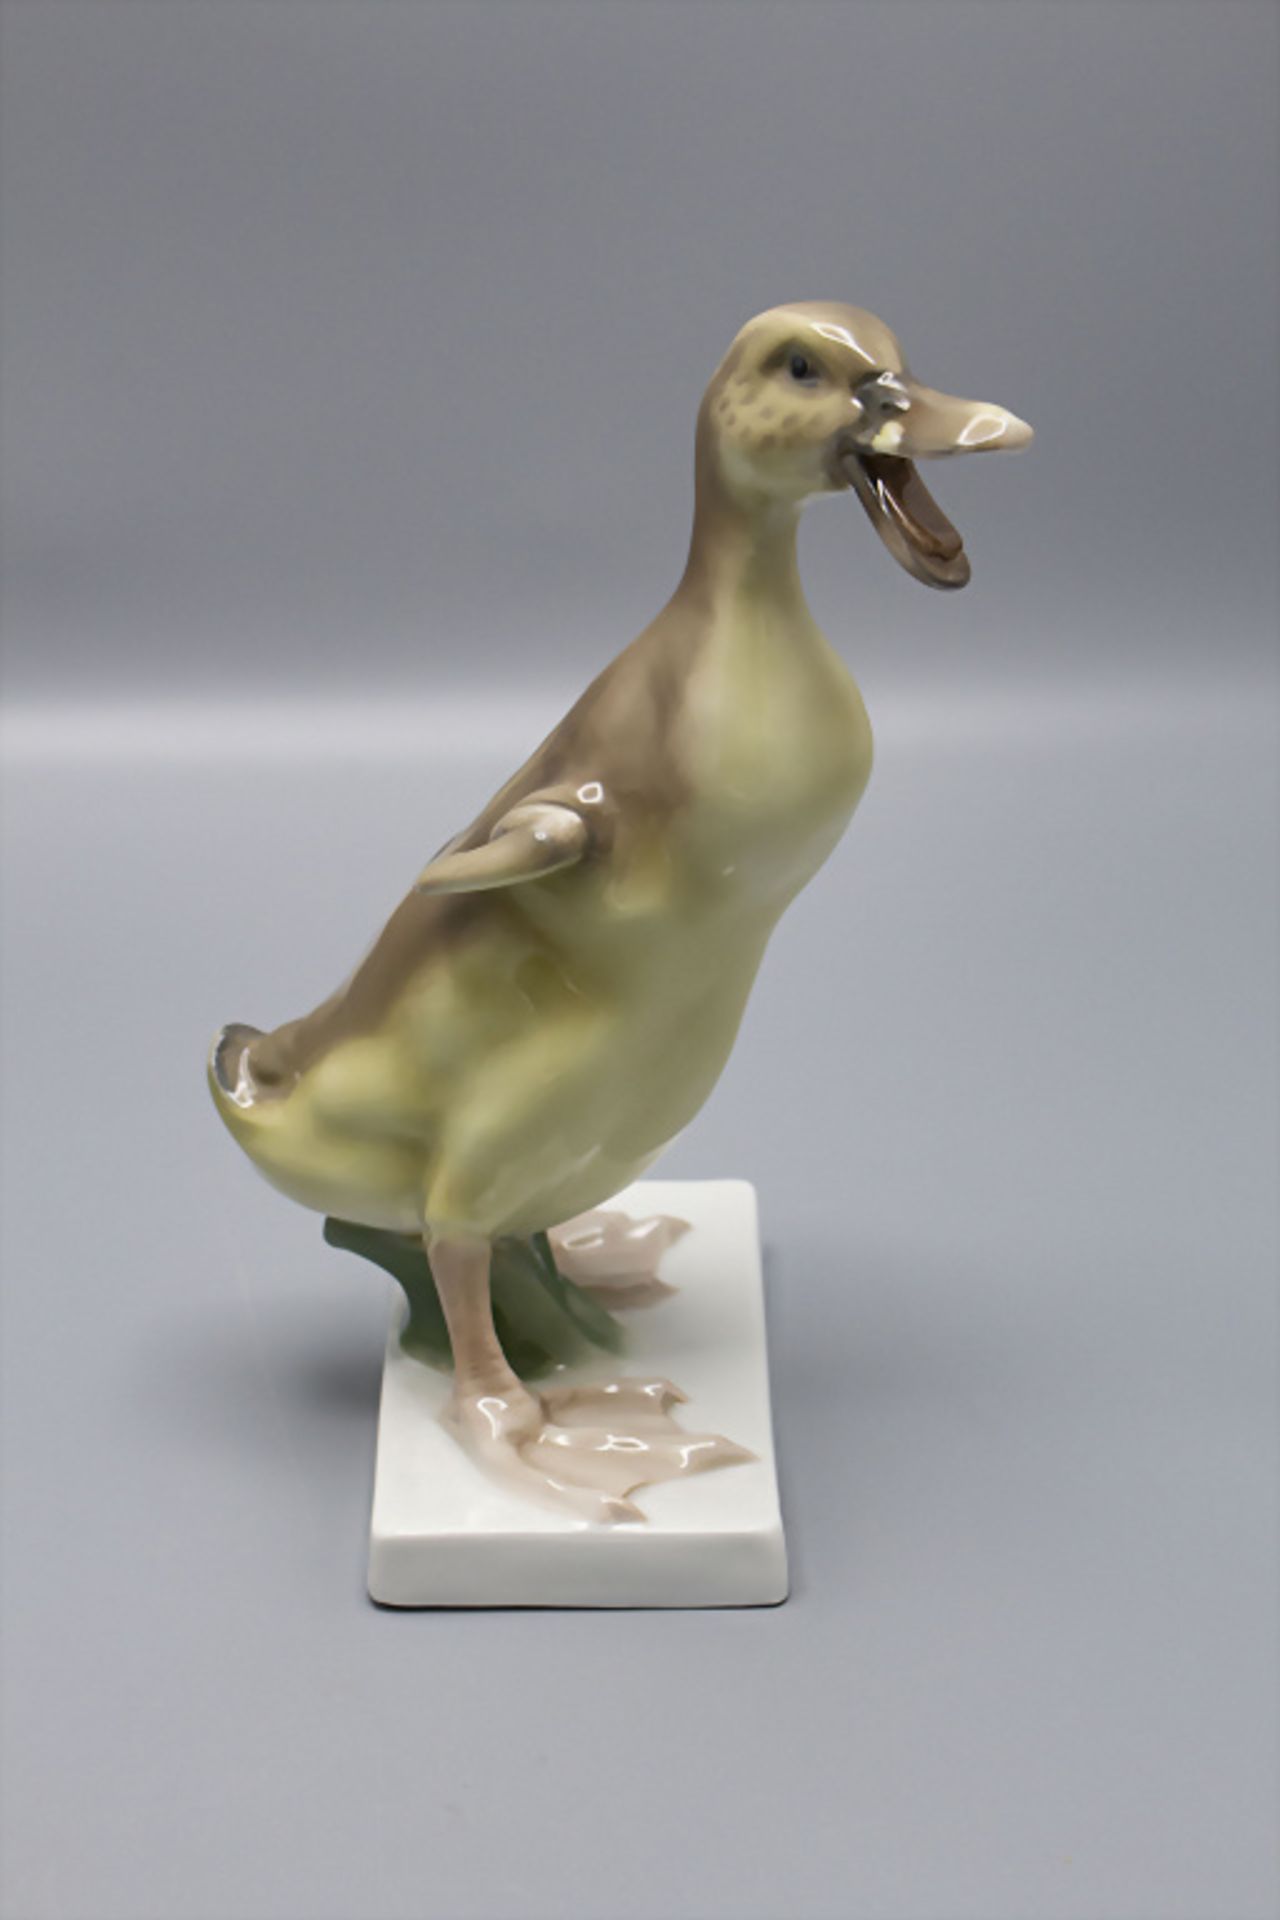 Vogelfigur 'Entenküken' / A duckling, Karl Himmelstoss, Rosenthal, Selb, um 1930 - Image 4 of 8